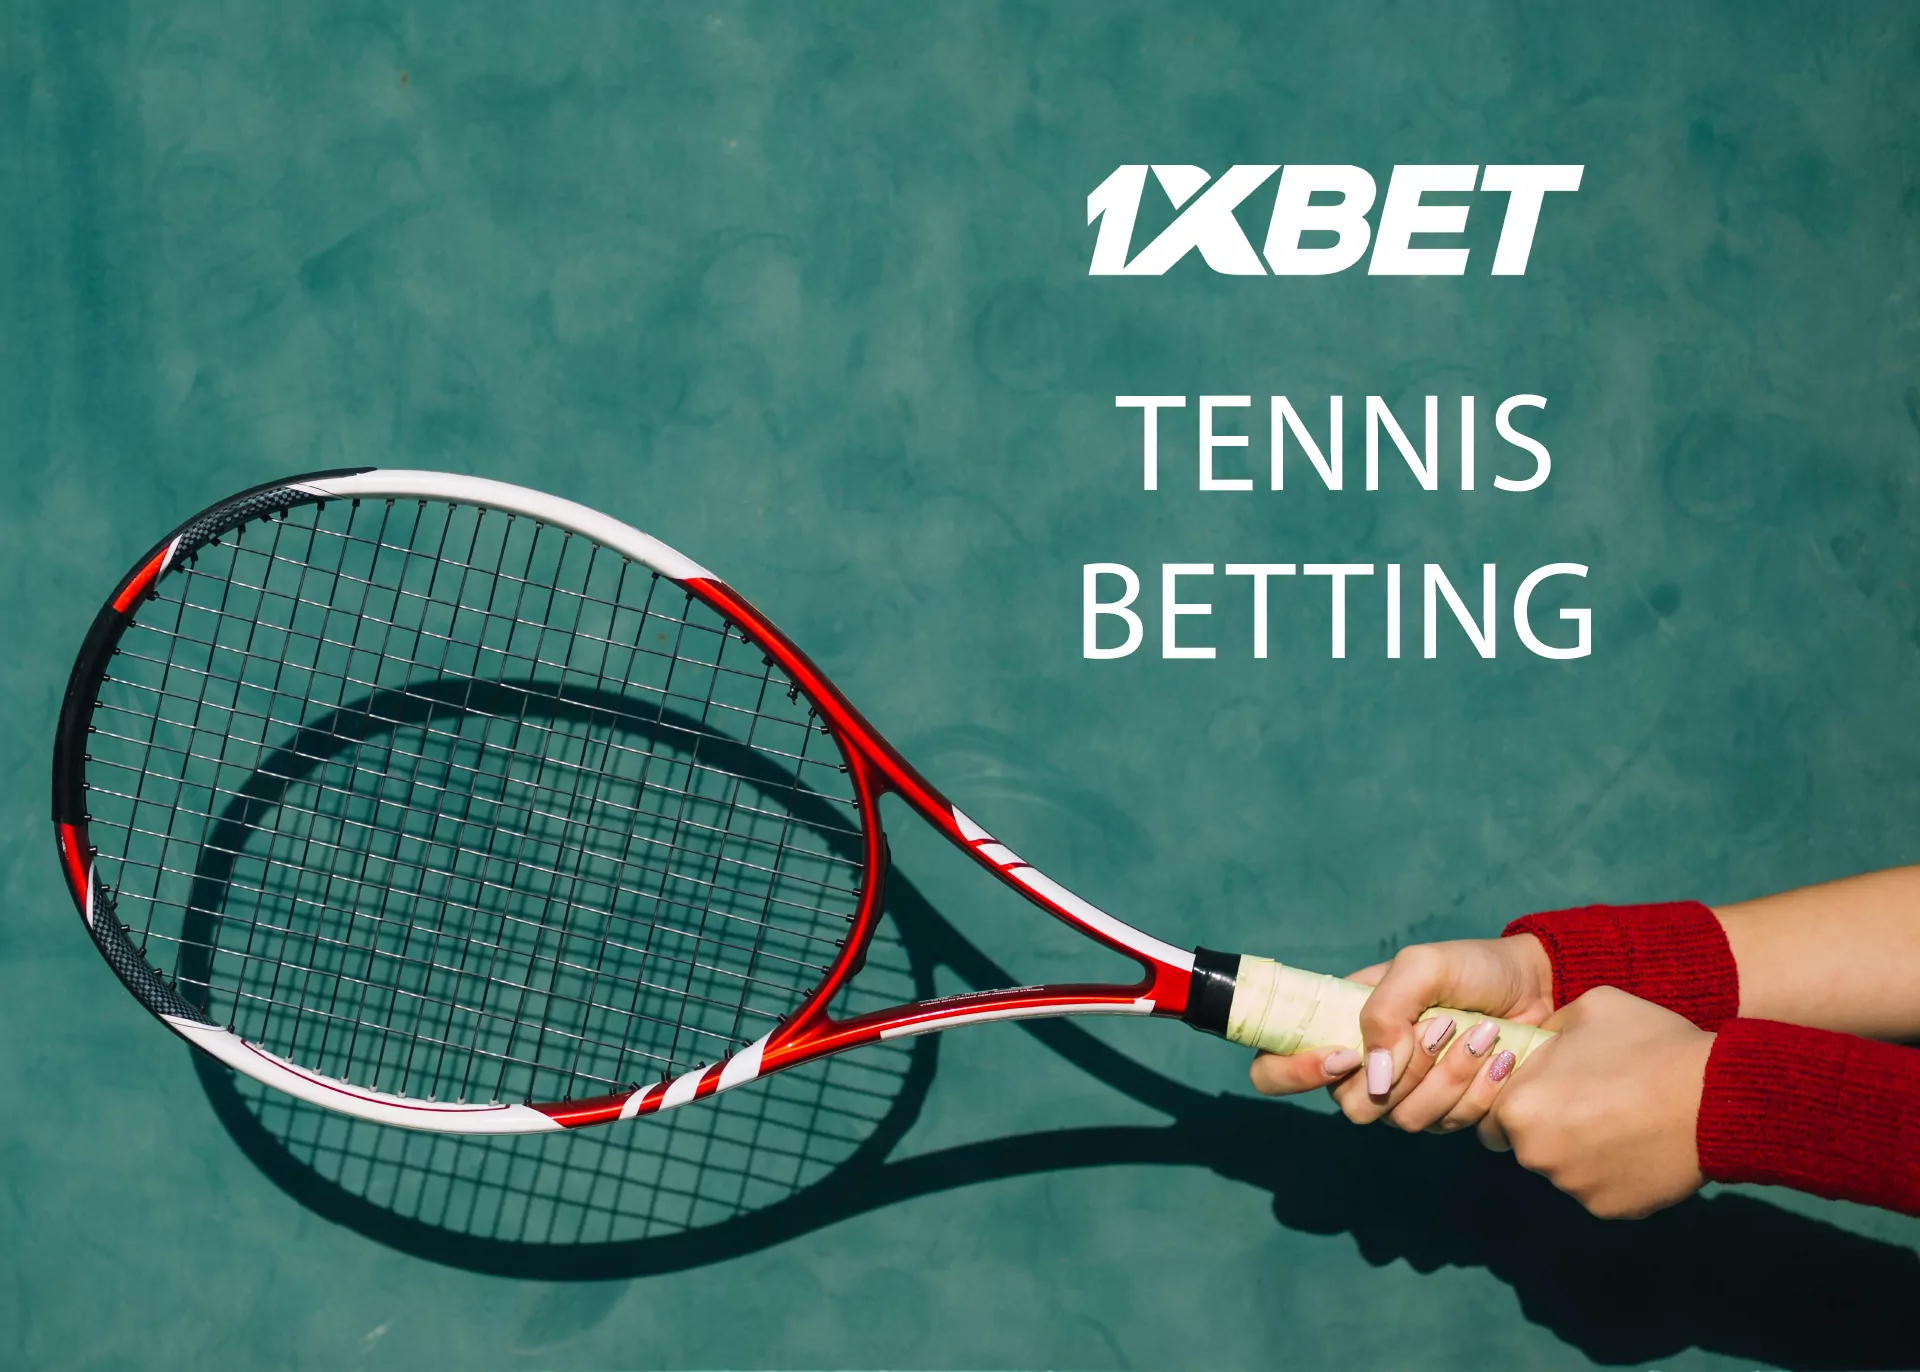 1xBet में टेनिस बेटिंग सेक्शन का प्रतिनिधित्व प्रमुख टूर्नामेंटों द्वारा किया जाता है।